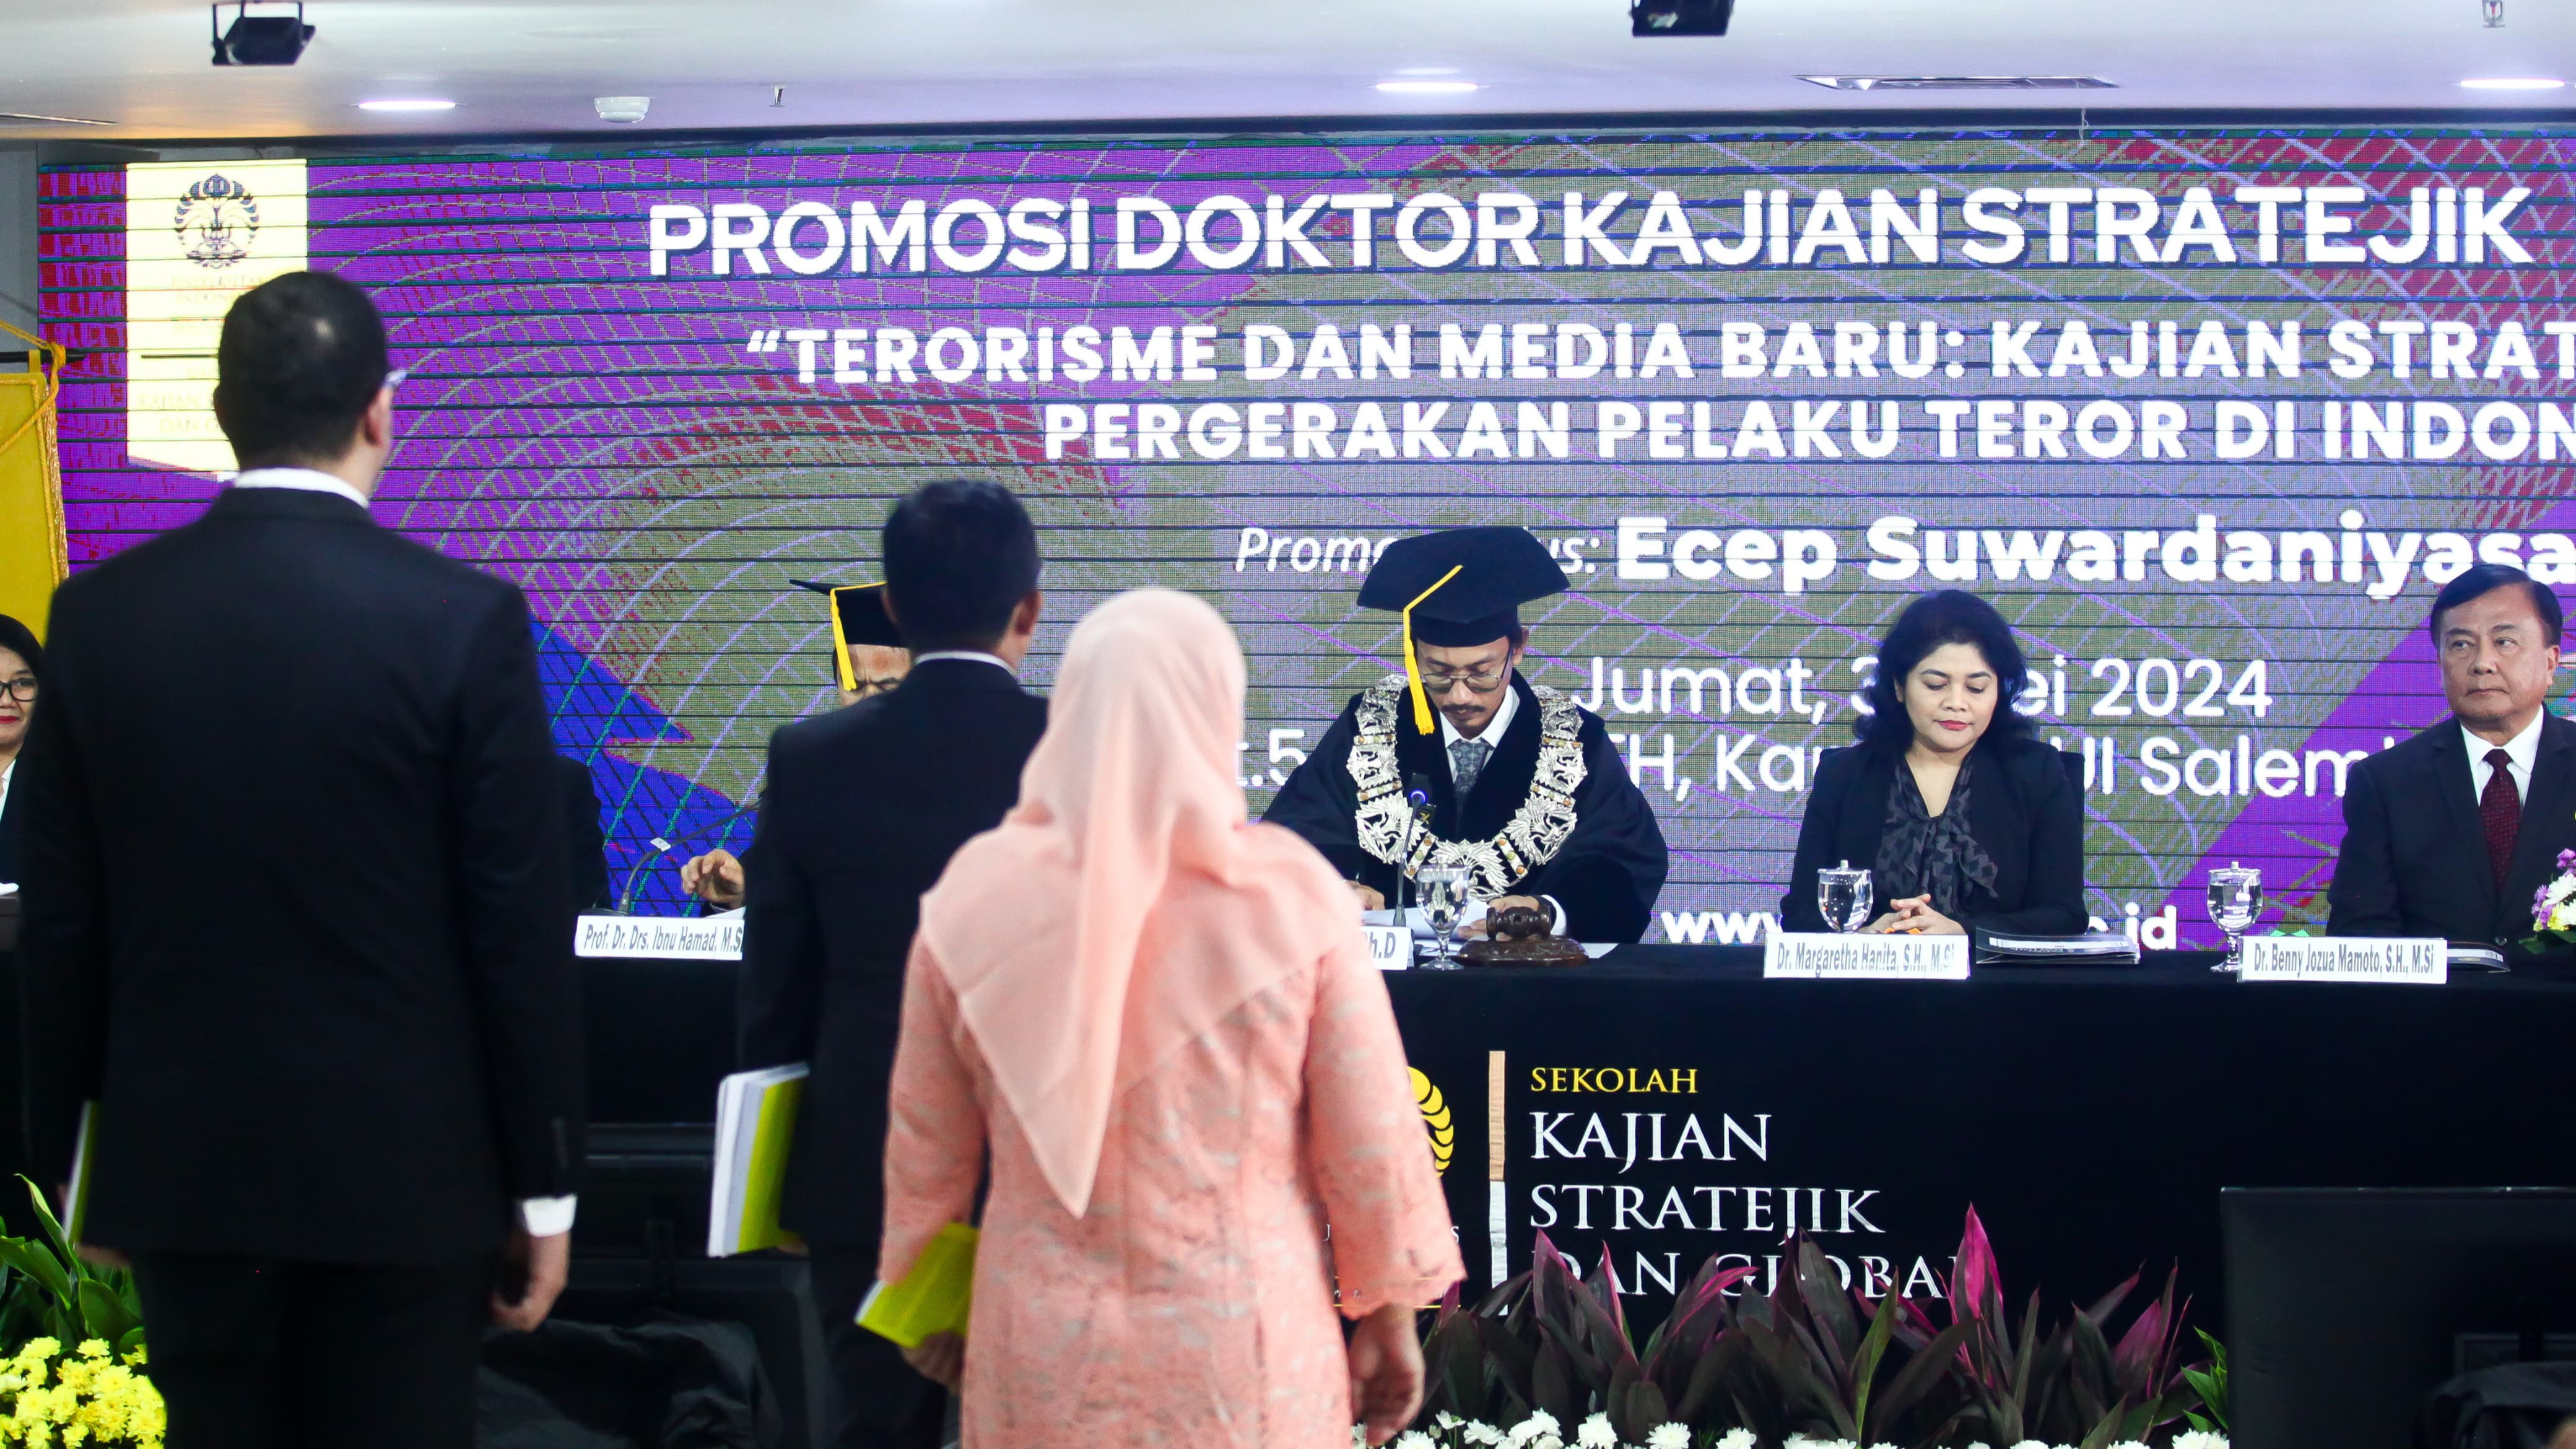 Pemimpin Redaksi tvOnenews.com Ecep Suwardaniyasa Muslimin jalani sidang Promosi Doktor Kajian Stratejik dan Global di Kampus Universitas Indonesia (UI) Salemba, Jumat (31/5/2024).